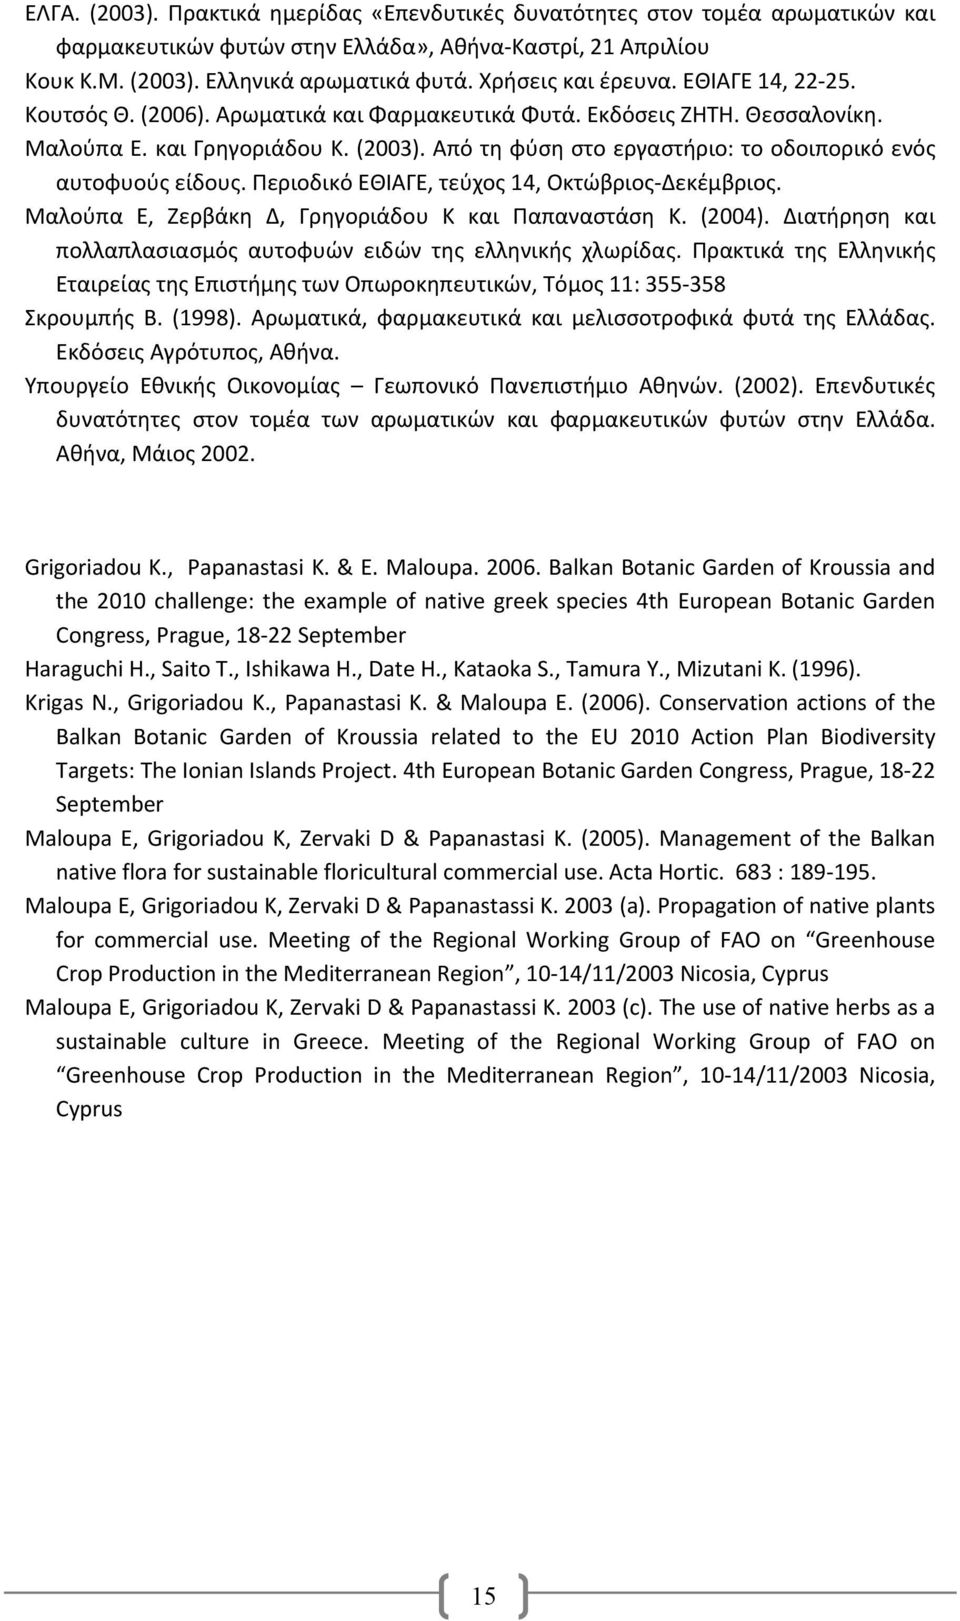 Από τη φύση στο εργαστήριο: το οδοιπορικό ενός αυτοφυούς είδους. Περιοδικό ΕΘΙΑΓΕ, τεύχος 14, Οκτώβριος Δεκέμβριος. Μαλούπα Ε, Ζερβάκη Δ, Γρηγοριάδου Κ και Παπαναστάση Κ. (2004).